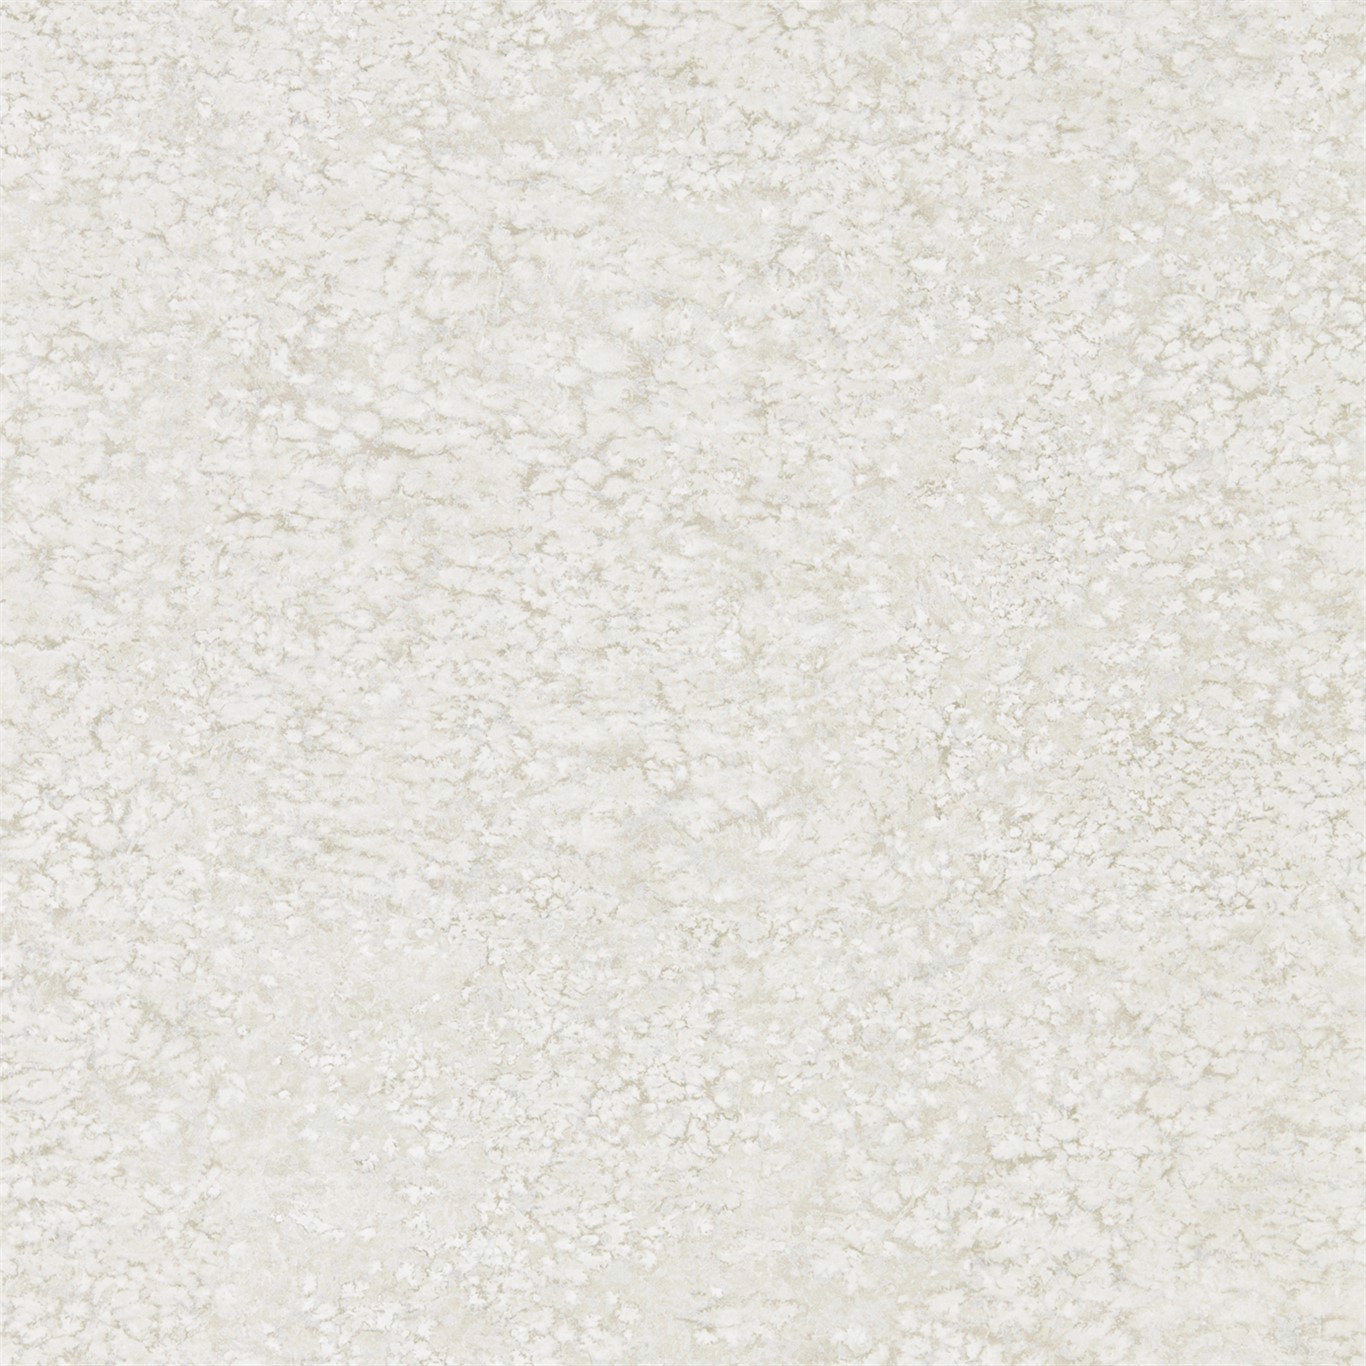 Weathered Stone Plain Limestone Wallpaper by ZOF